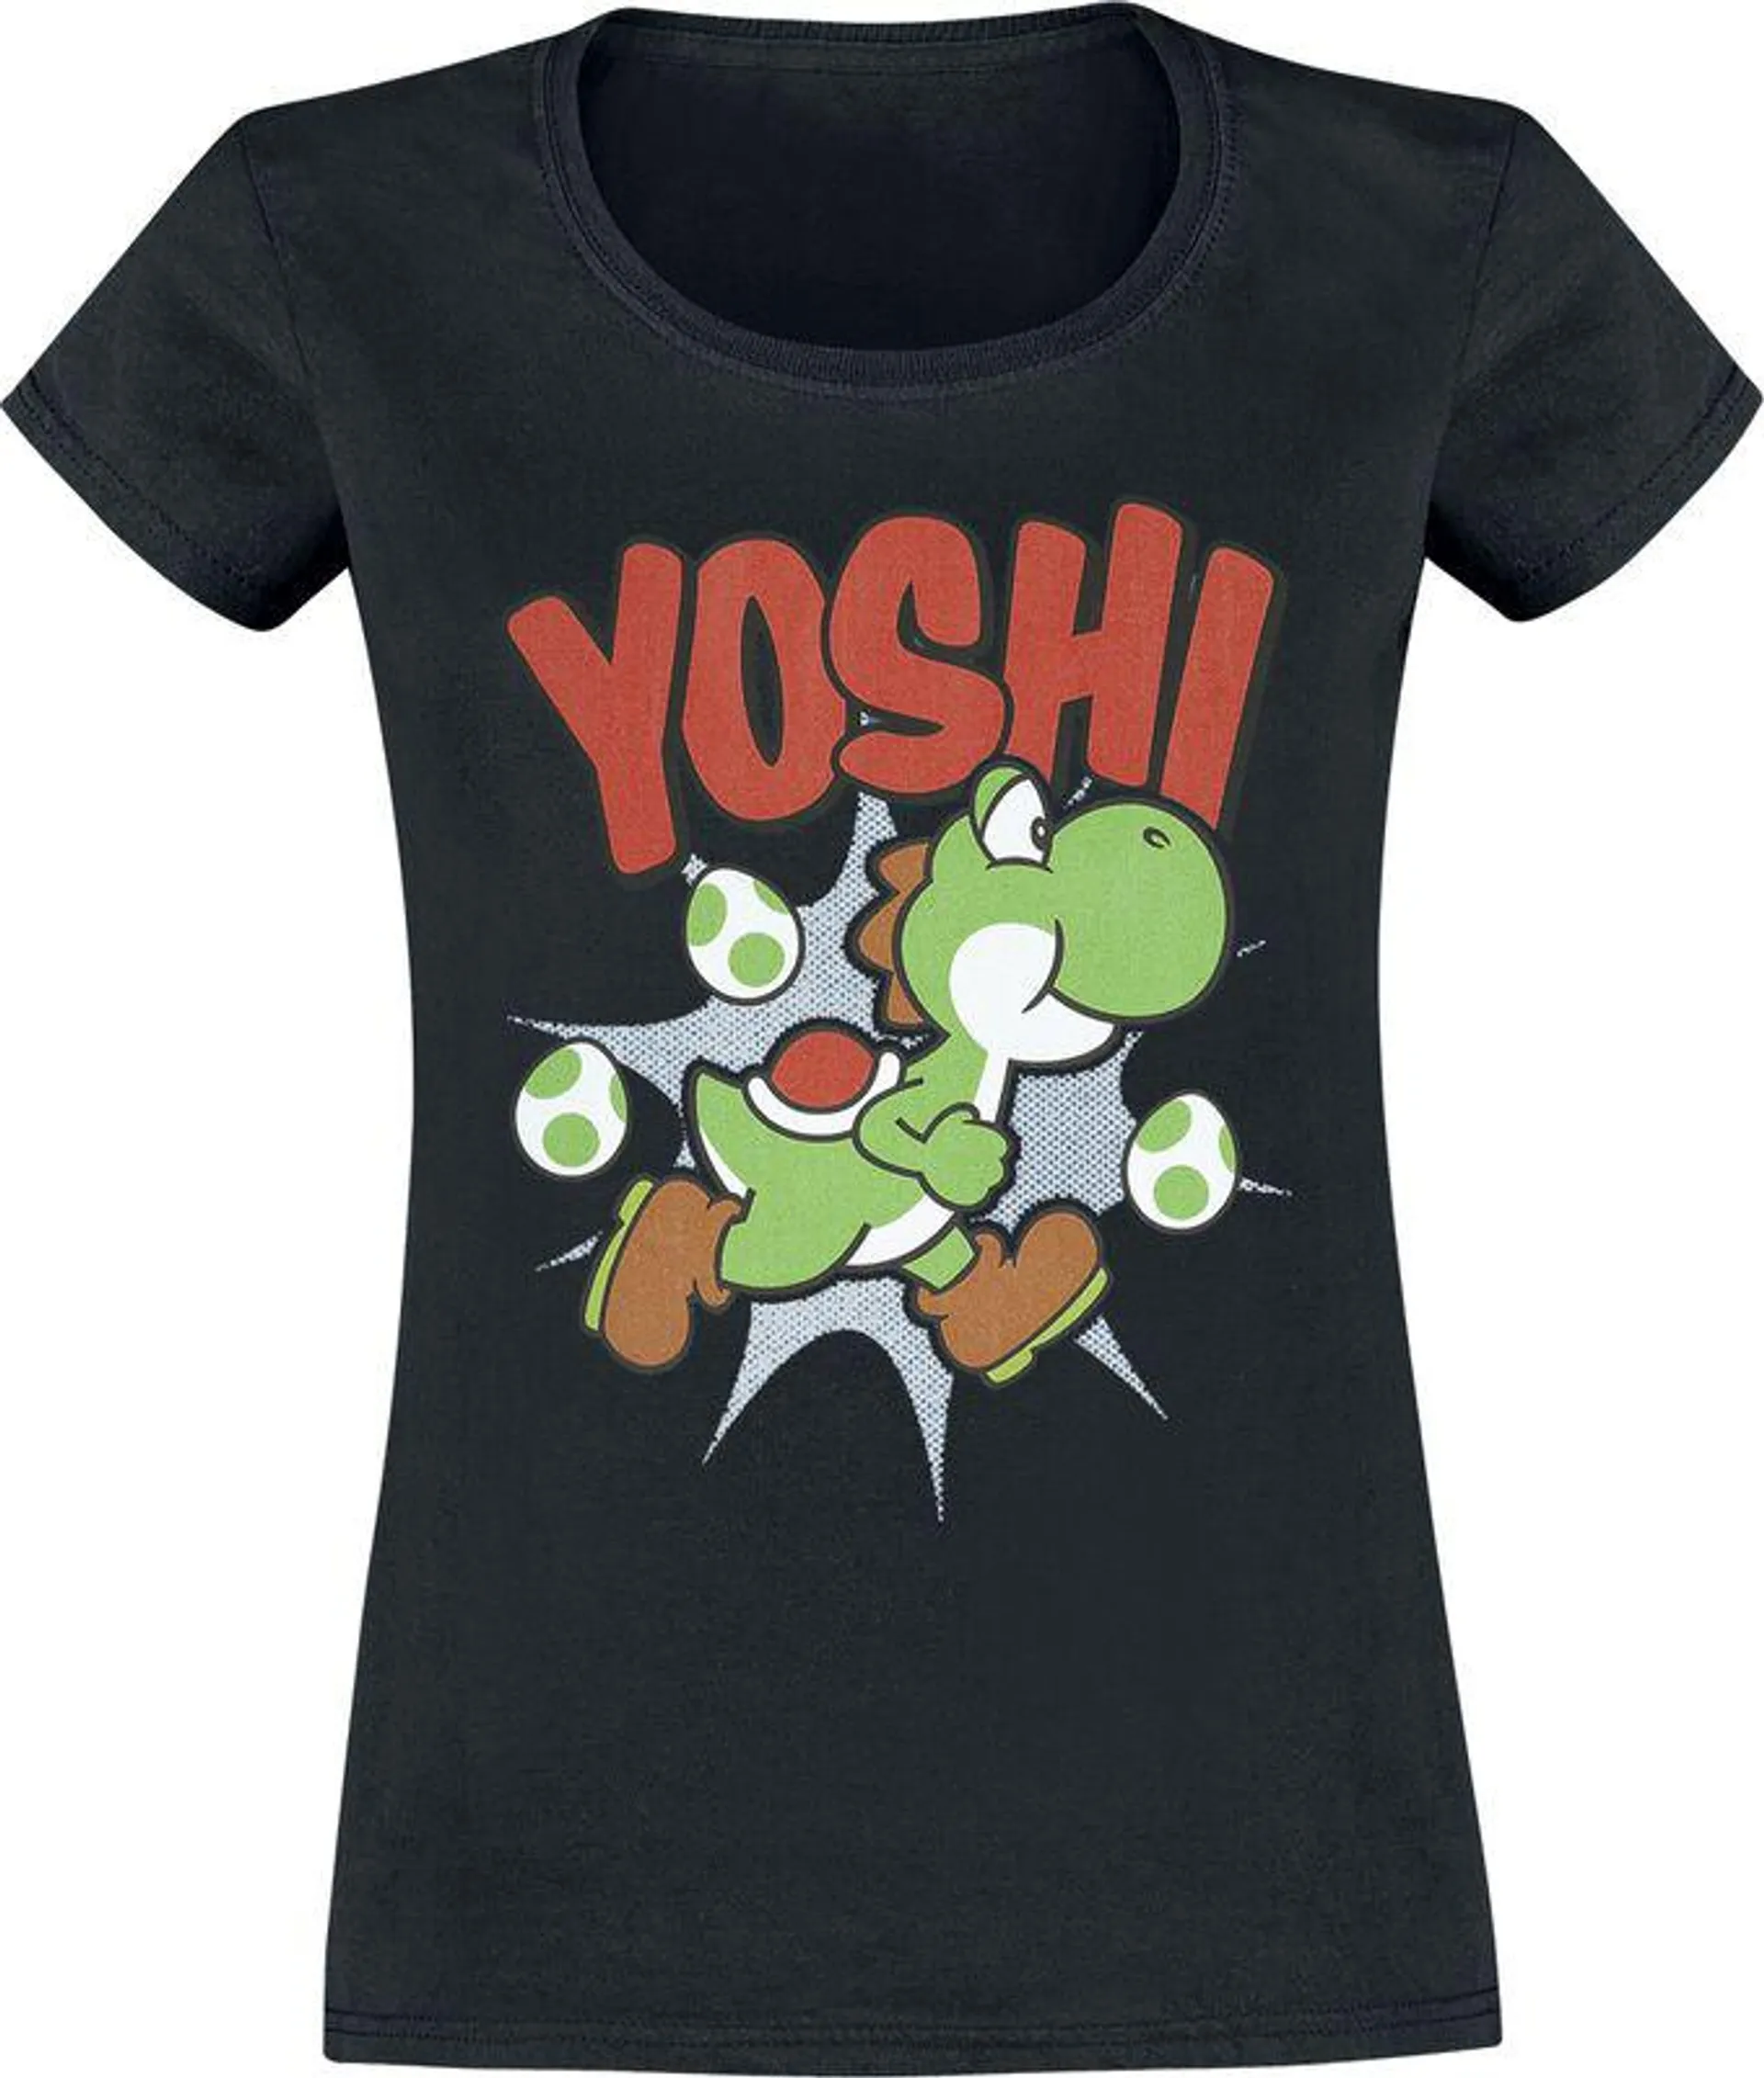 Yoshi | T-Shirt | nero | Super Mario